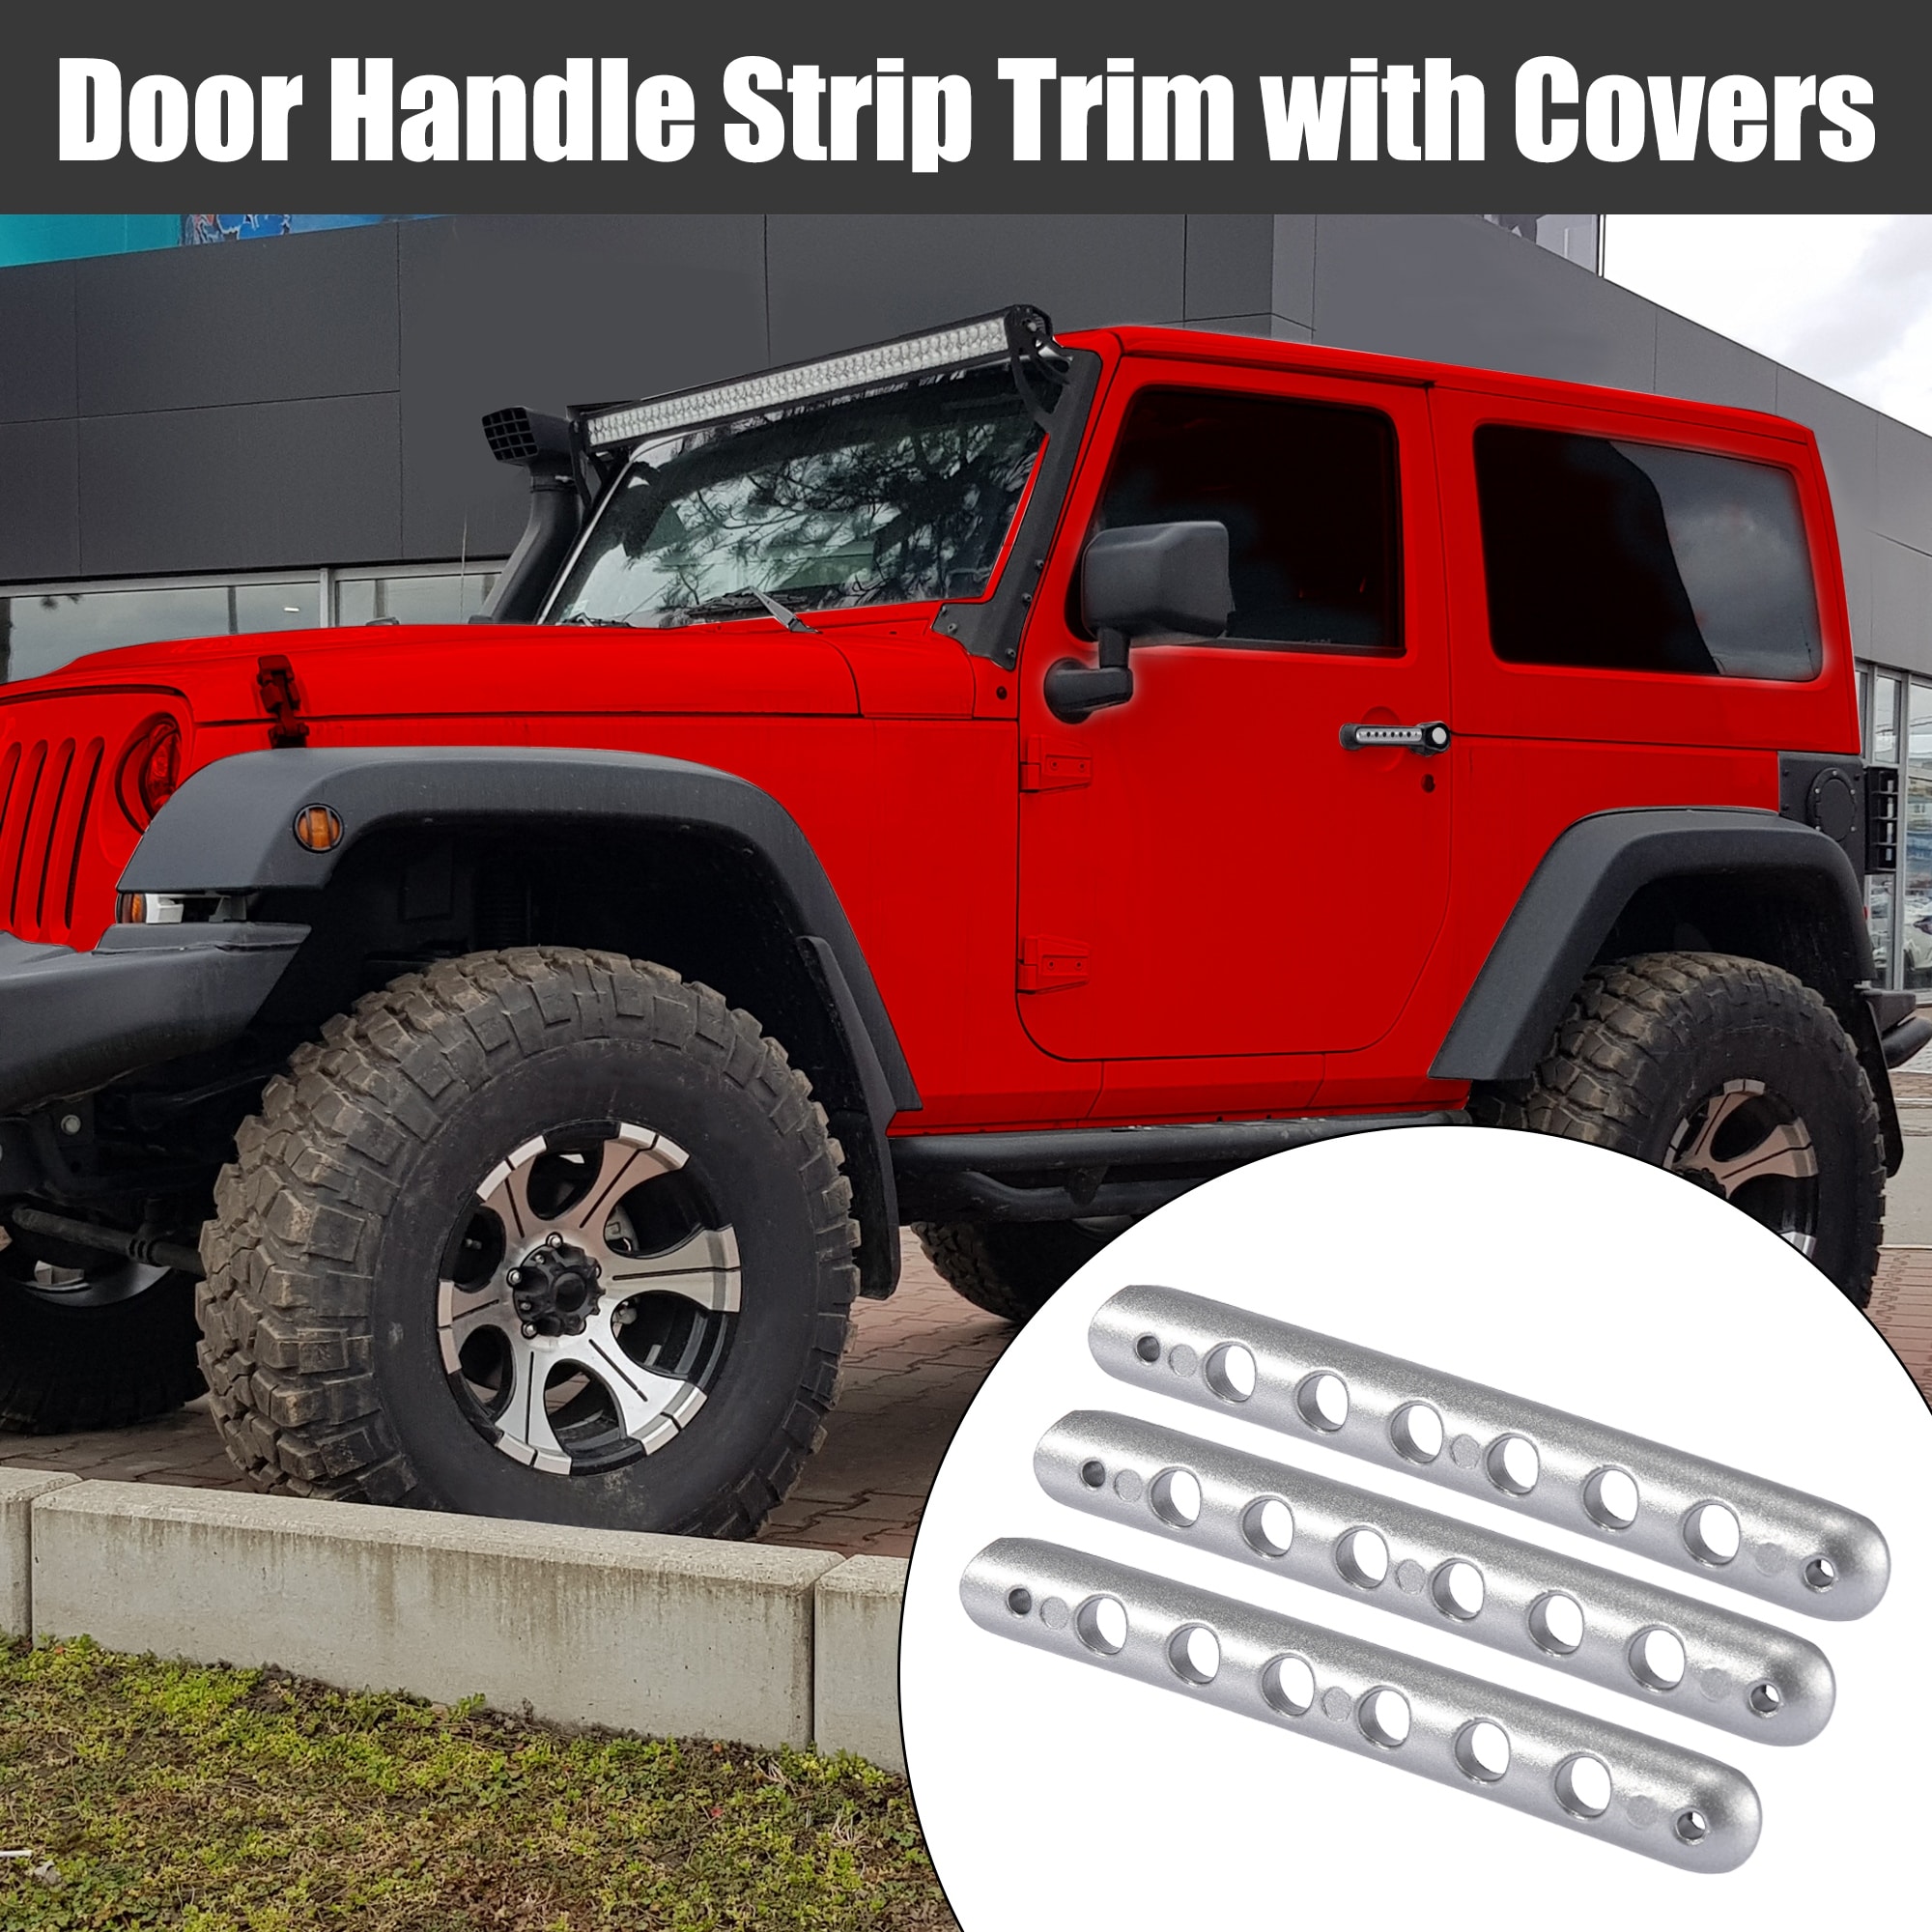 3pcs Door Handle Trim with Cover for Jeep Wrangler 2 Door 07-18 - Silver Tone